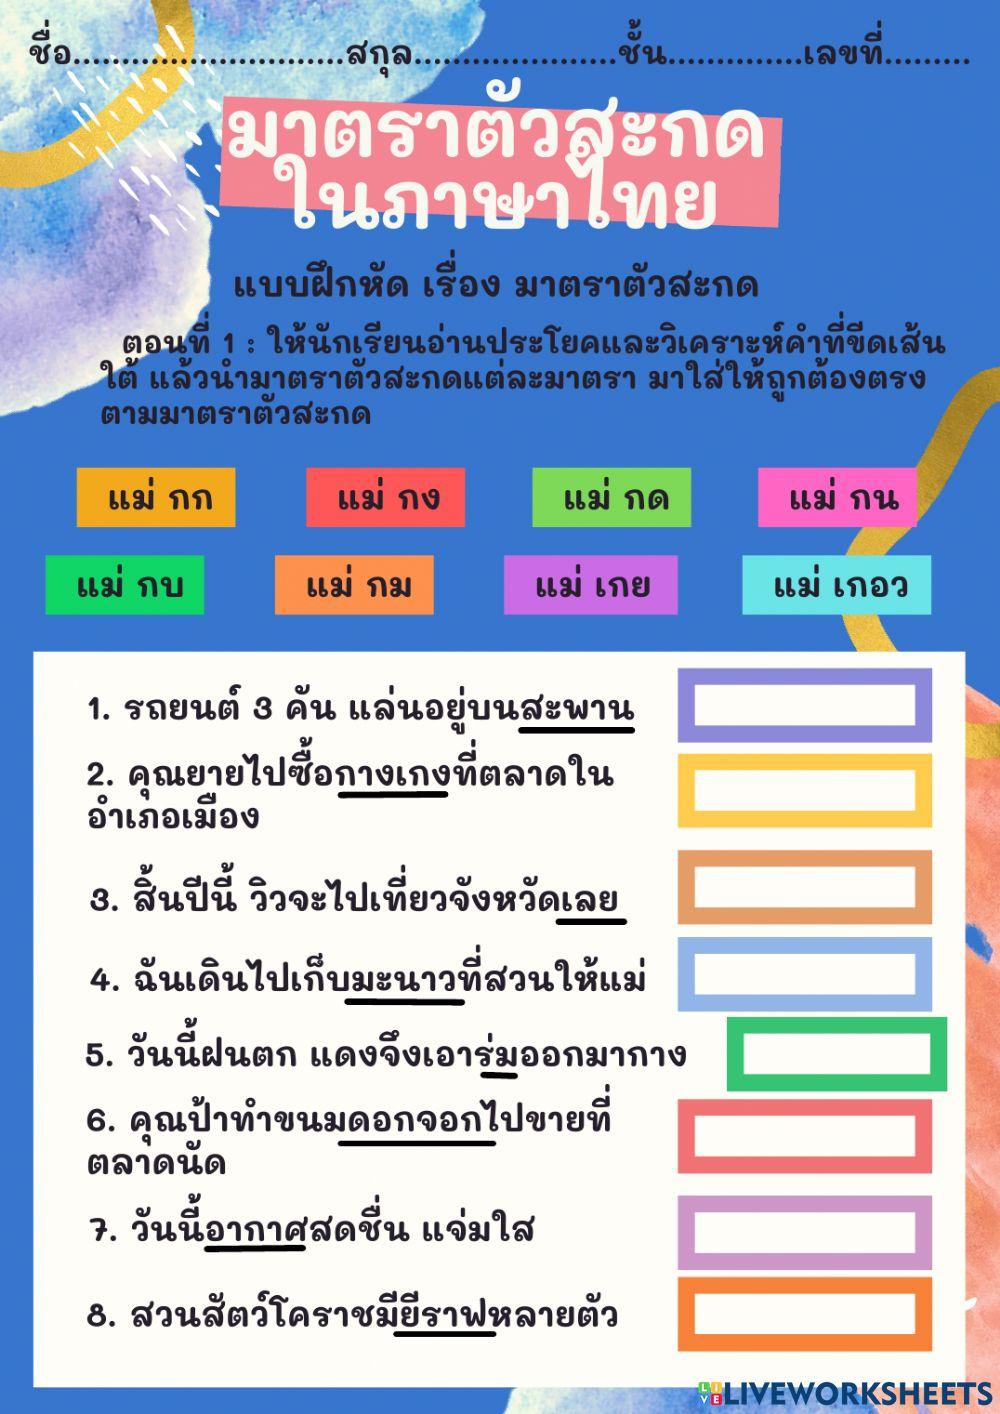 ใบงานมาตราตัวสะกดในภาษาไทย